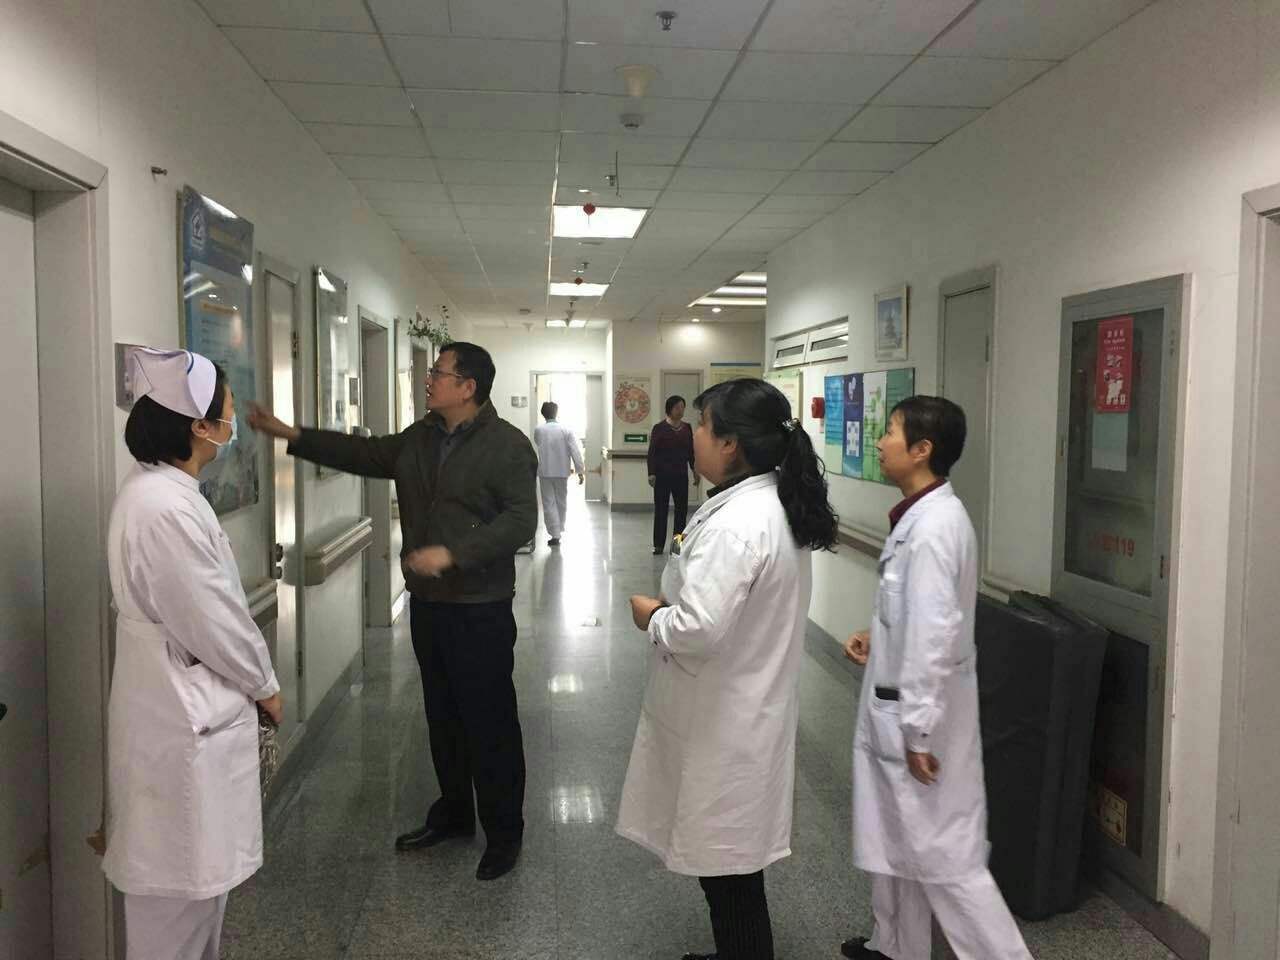 包含北京市海淀医院代帮挂号，保证为客户私人信息保密的词条